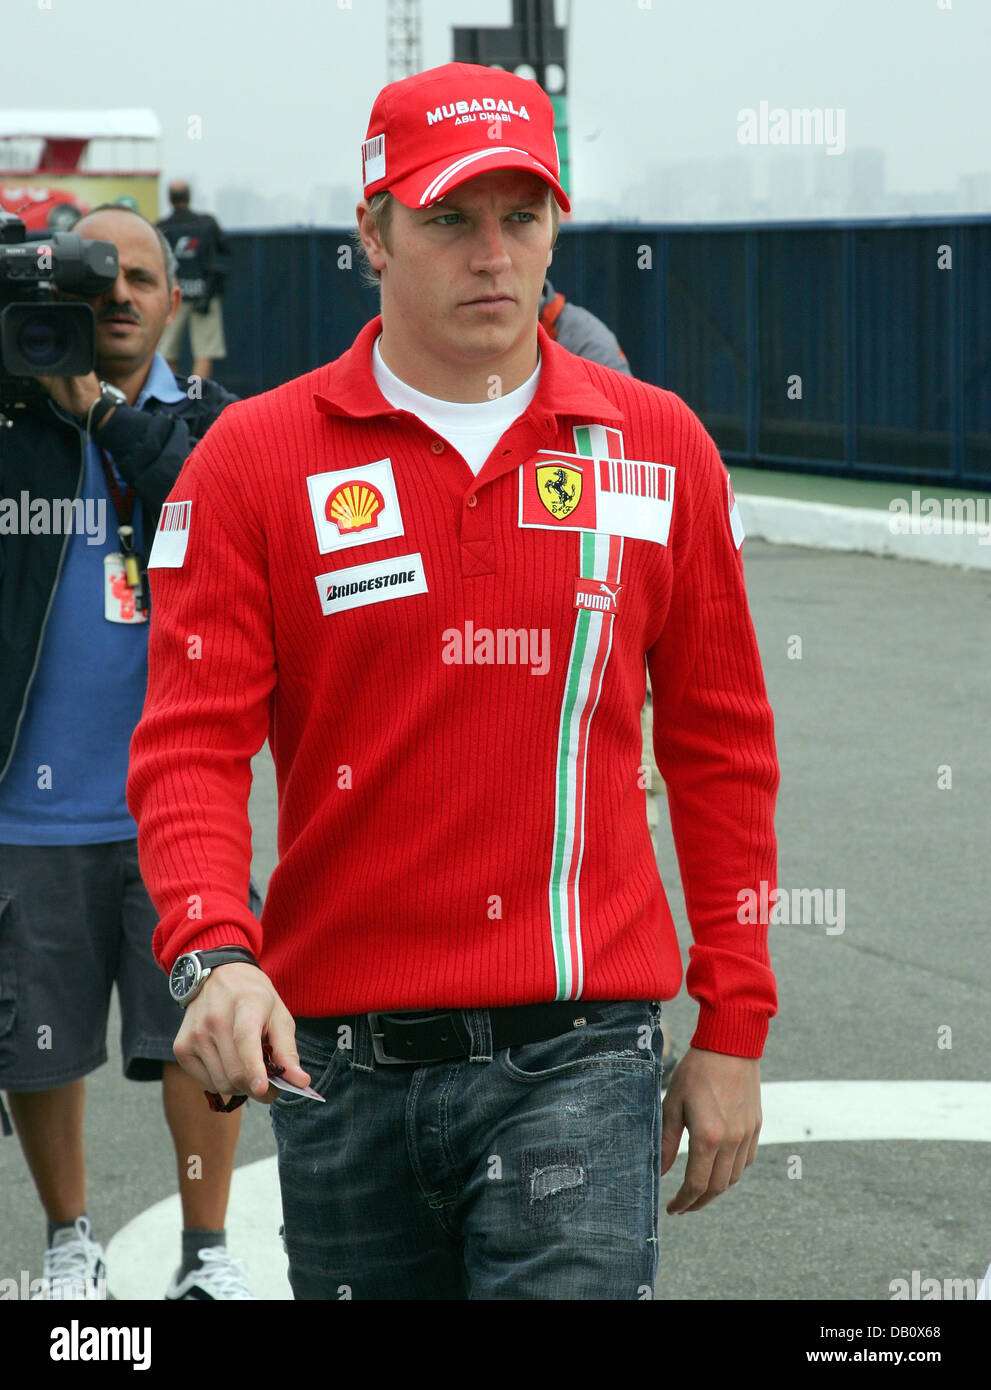 Pilote de formule 1 finlandais Kimi Raikkonen de Ferrari arrive sur le circuit d'Interlagos à Sao Paulo, Brésil, 18 octobre 2007. Le Brésilien la Formule Un Grand Prix 2007 aura lieu le 21 octobre. Photo : GERO BRELOER Banque D'Images